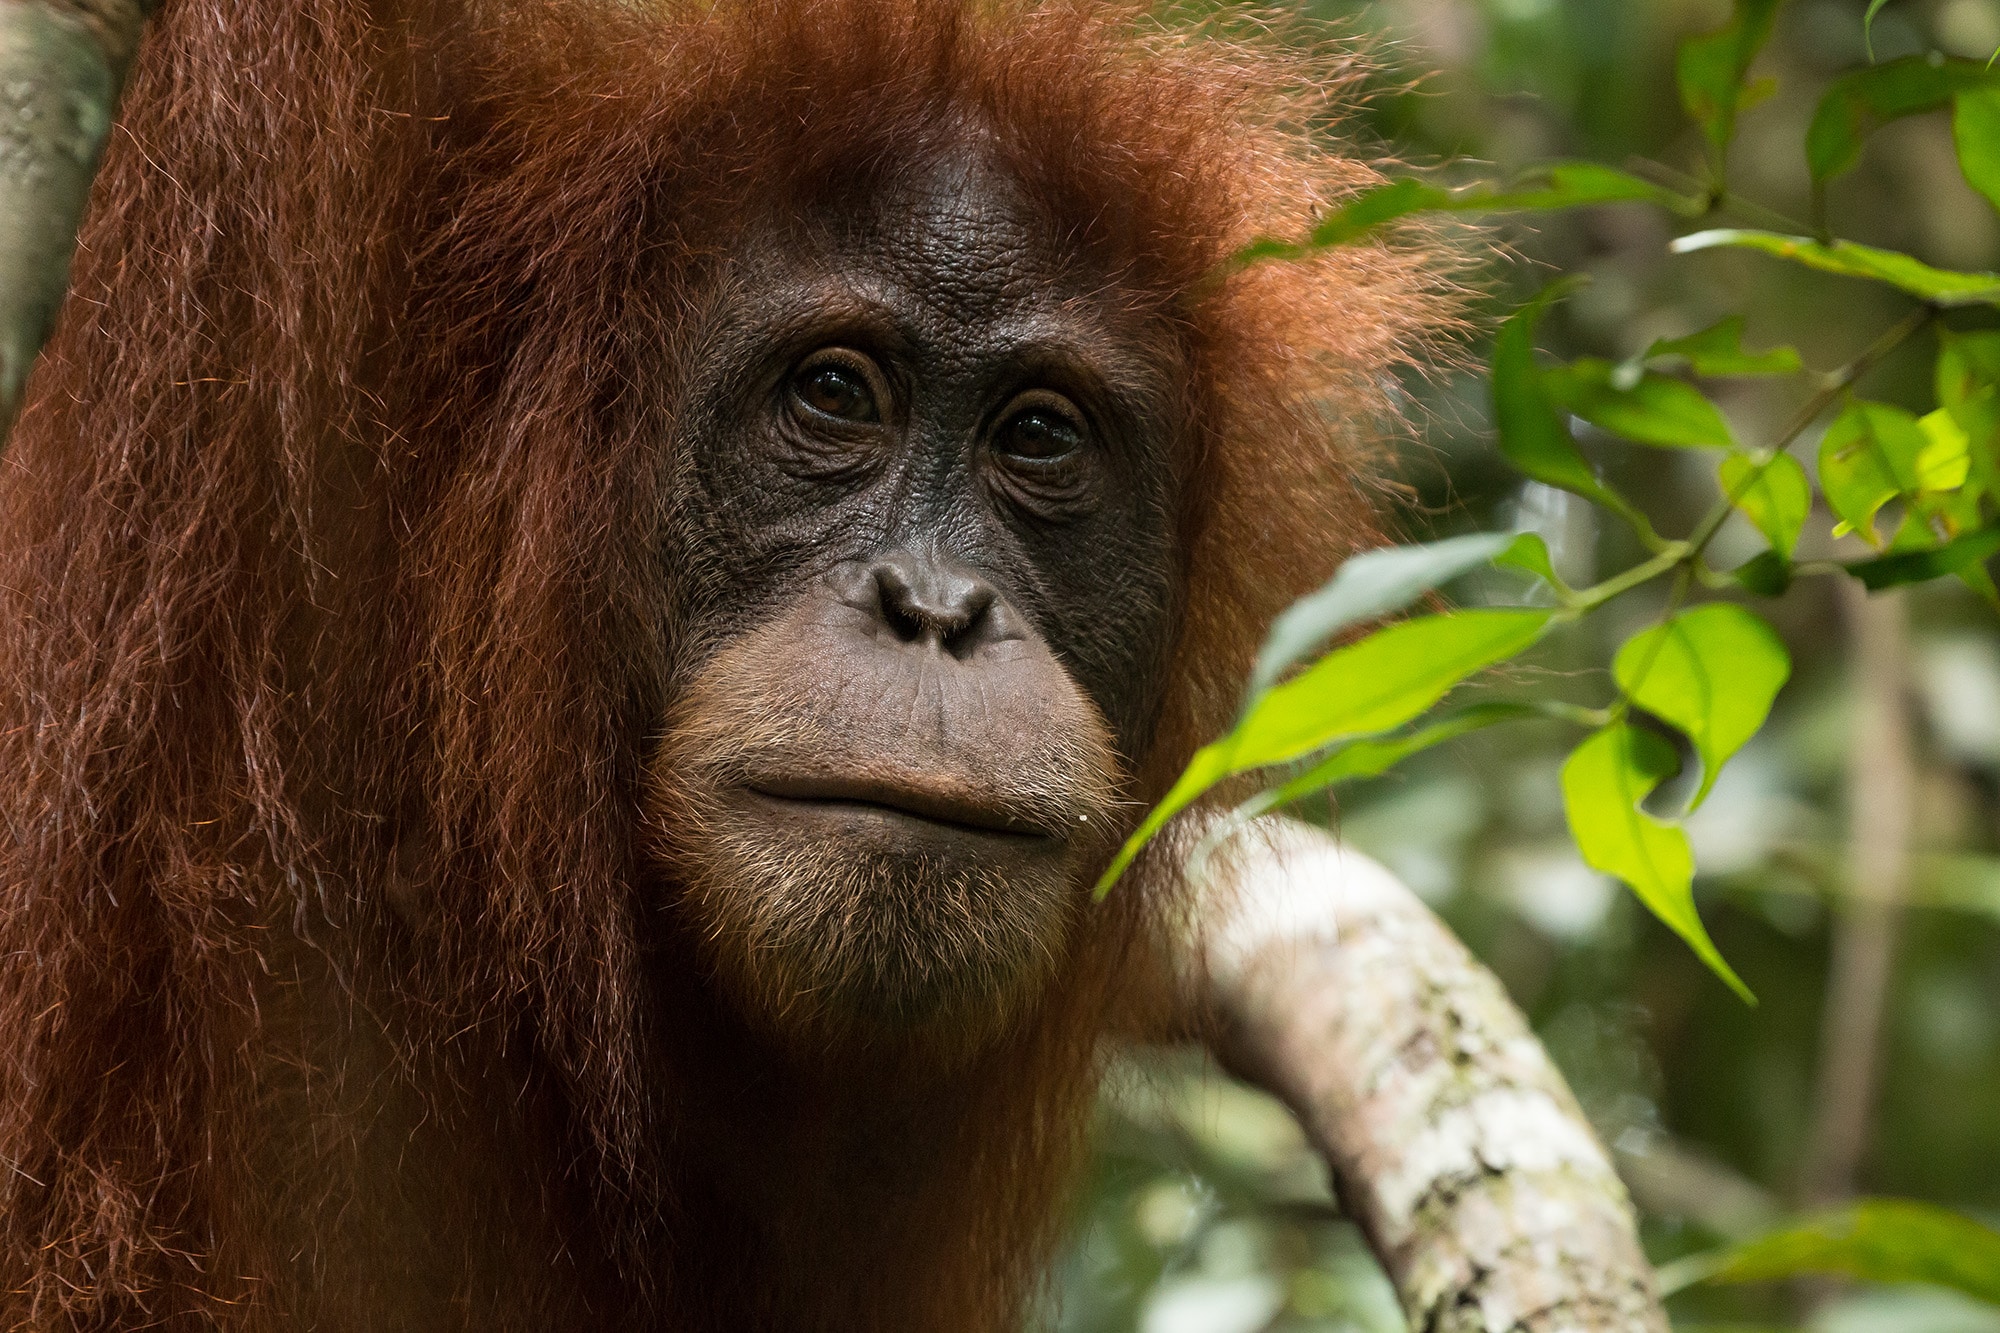 indonesia orangutan tours